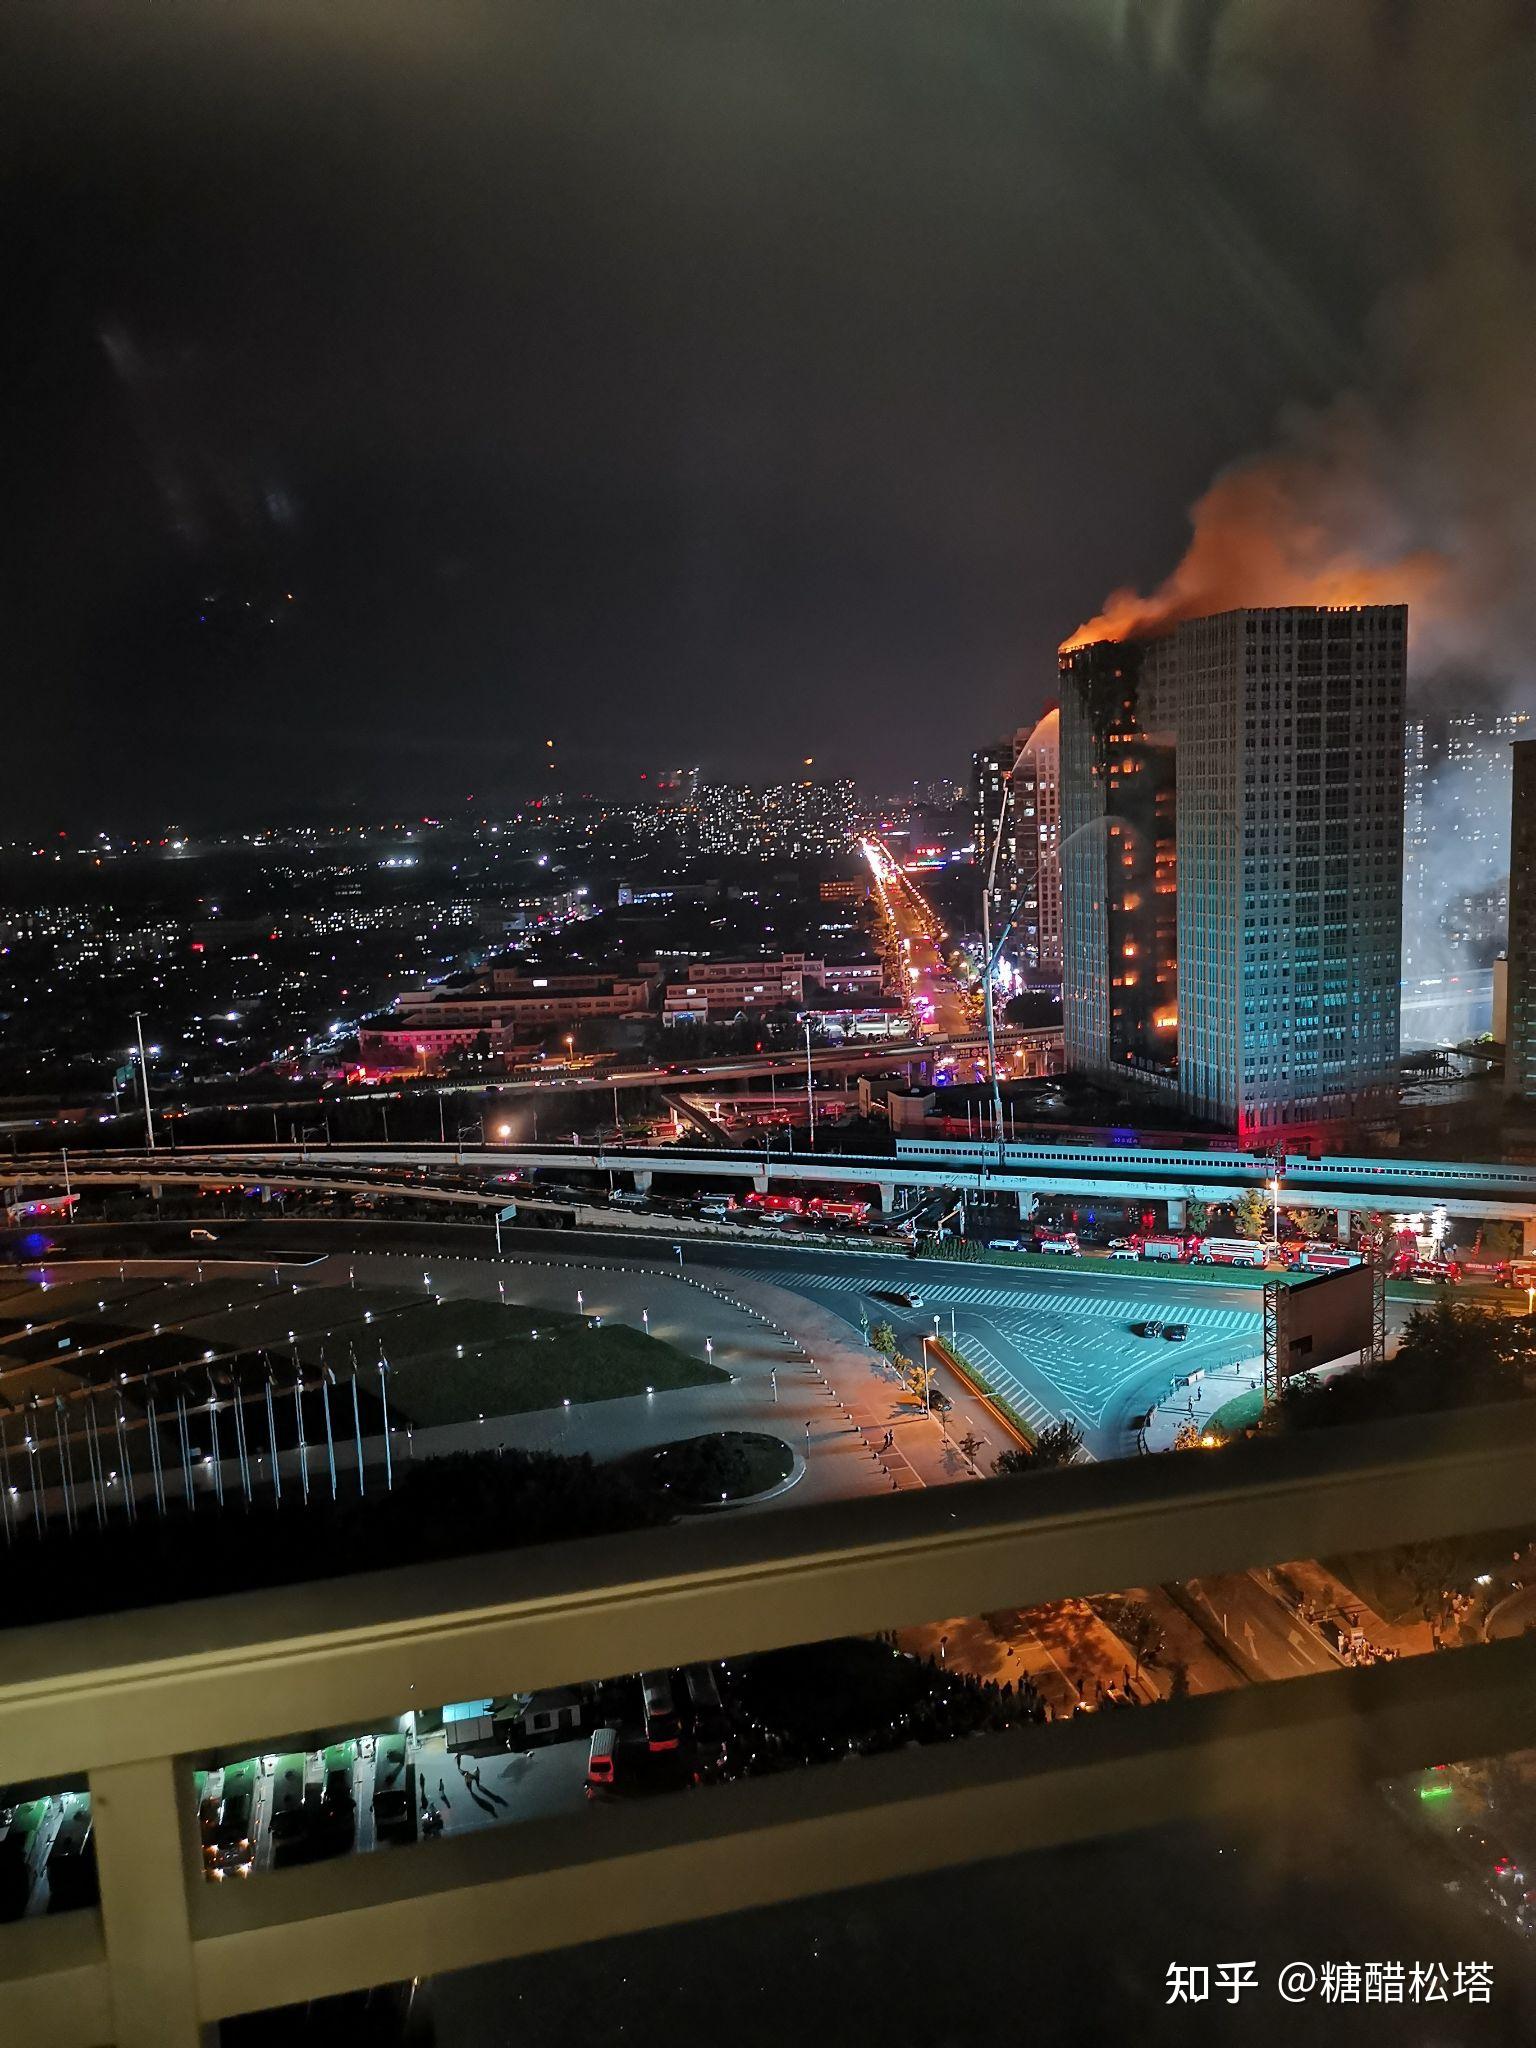 8月27日大连凯旋国际大厦失火目前现场情况如何